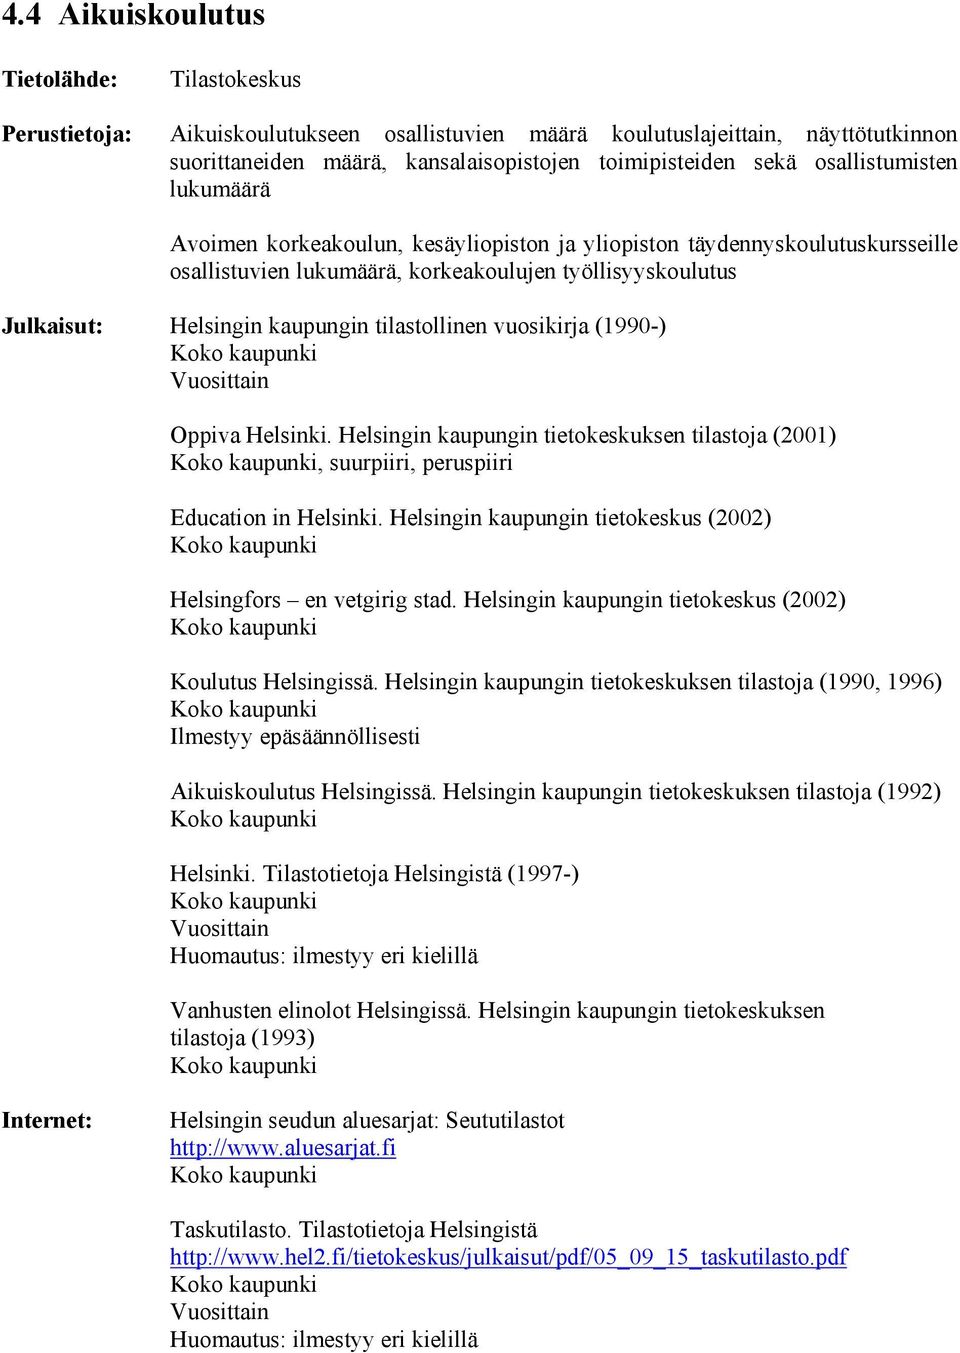 Helsingin kaupungin tietokeskus (2002) Koulutus Helsingissä. Helsingin kaupungin tietokeskuksen tilastoja (1990, 1996) Aikuiskoulutus Helsingissä.